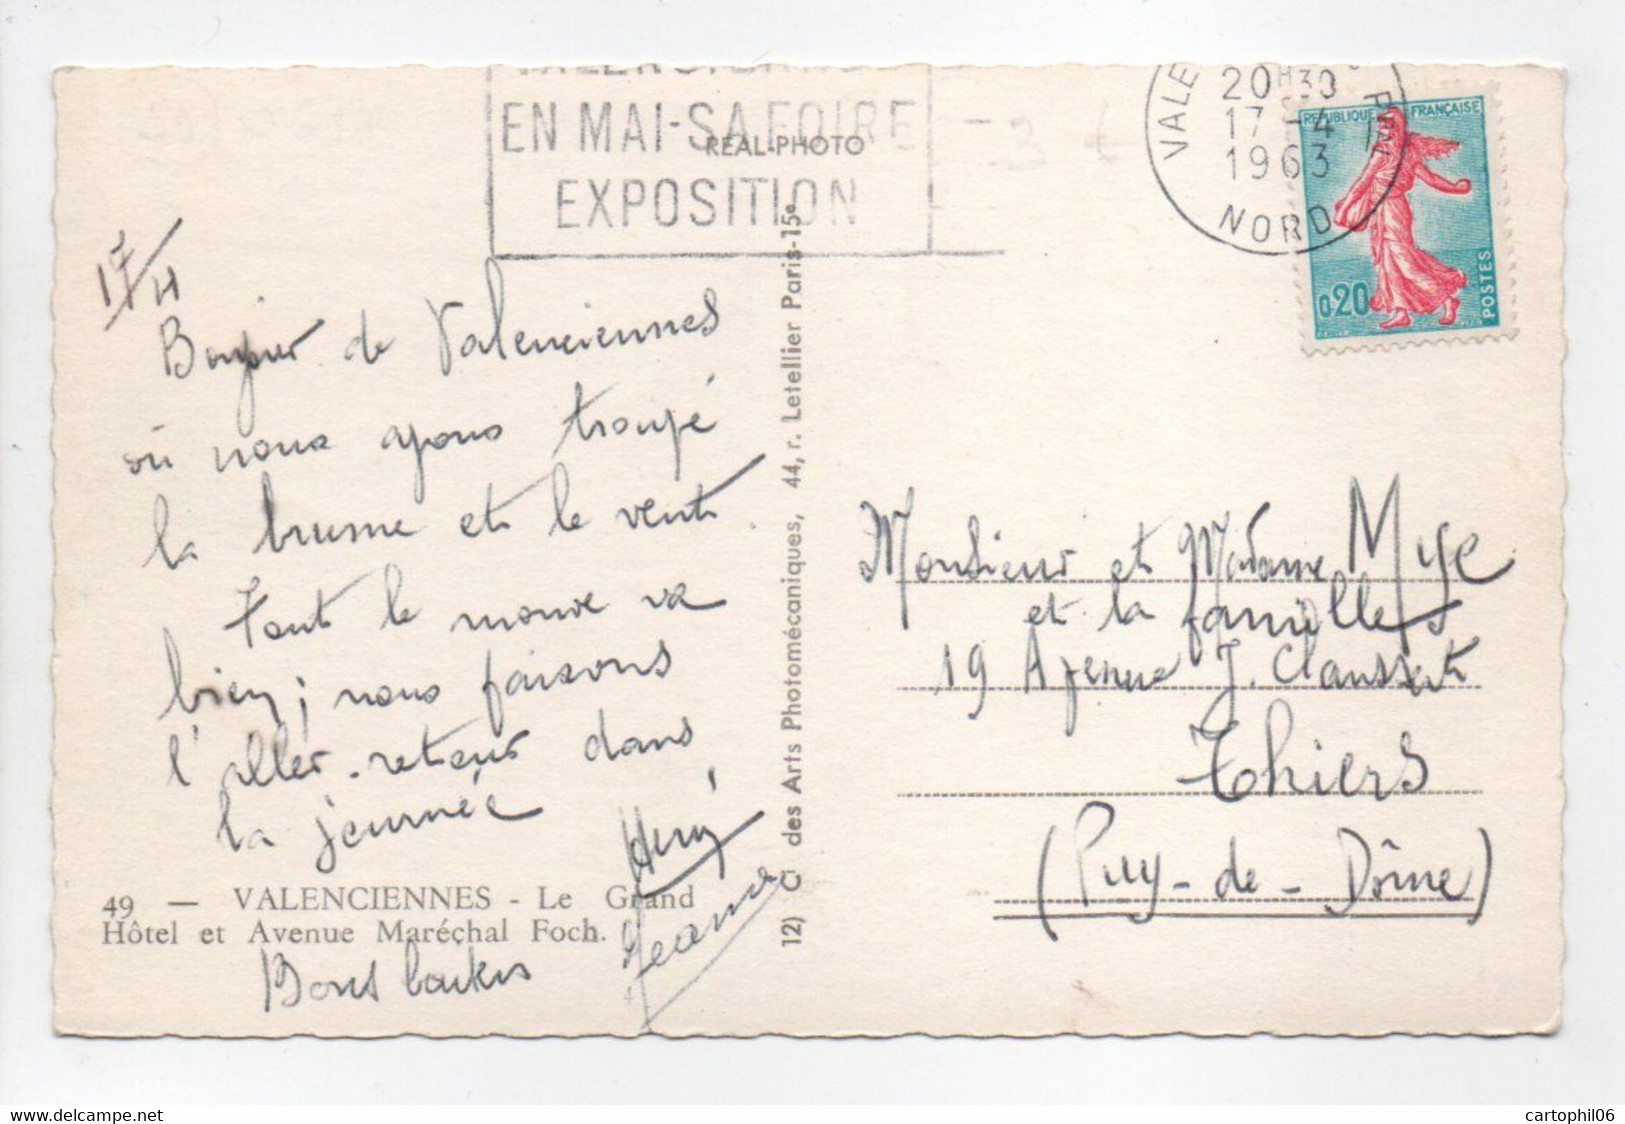 - CPSM VALENCIENNES (59) - Le Grand Hôtel Et Avenue Maréchal Foch 1963 - Photo CAP N° 49 - - Valenciennes